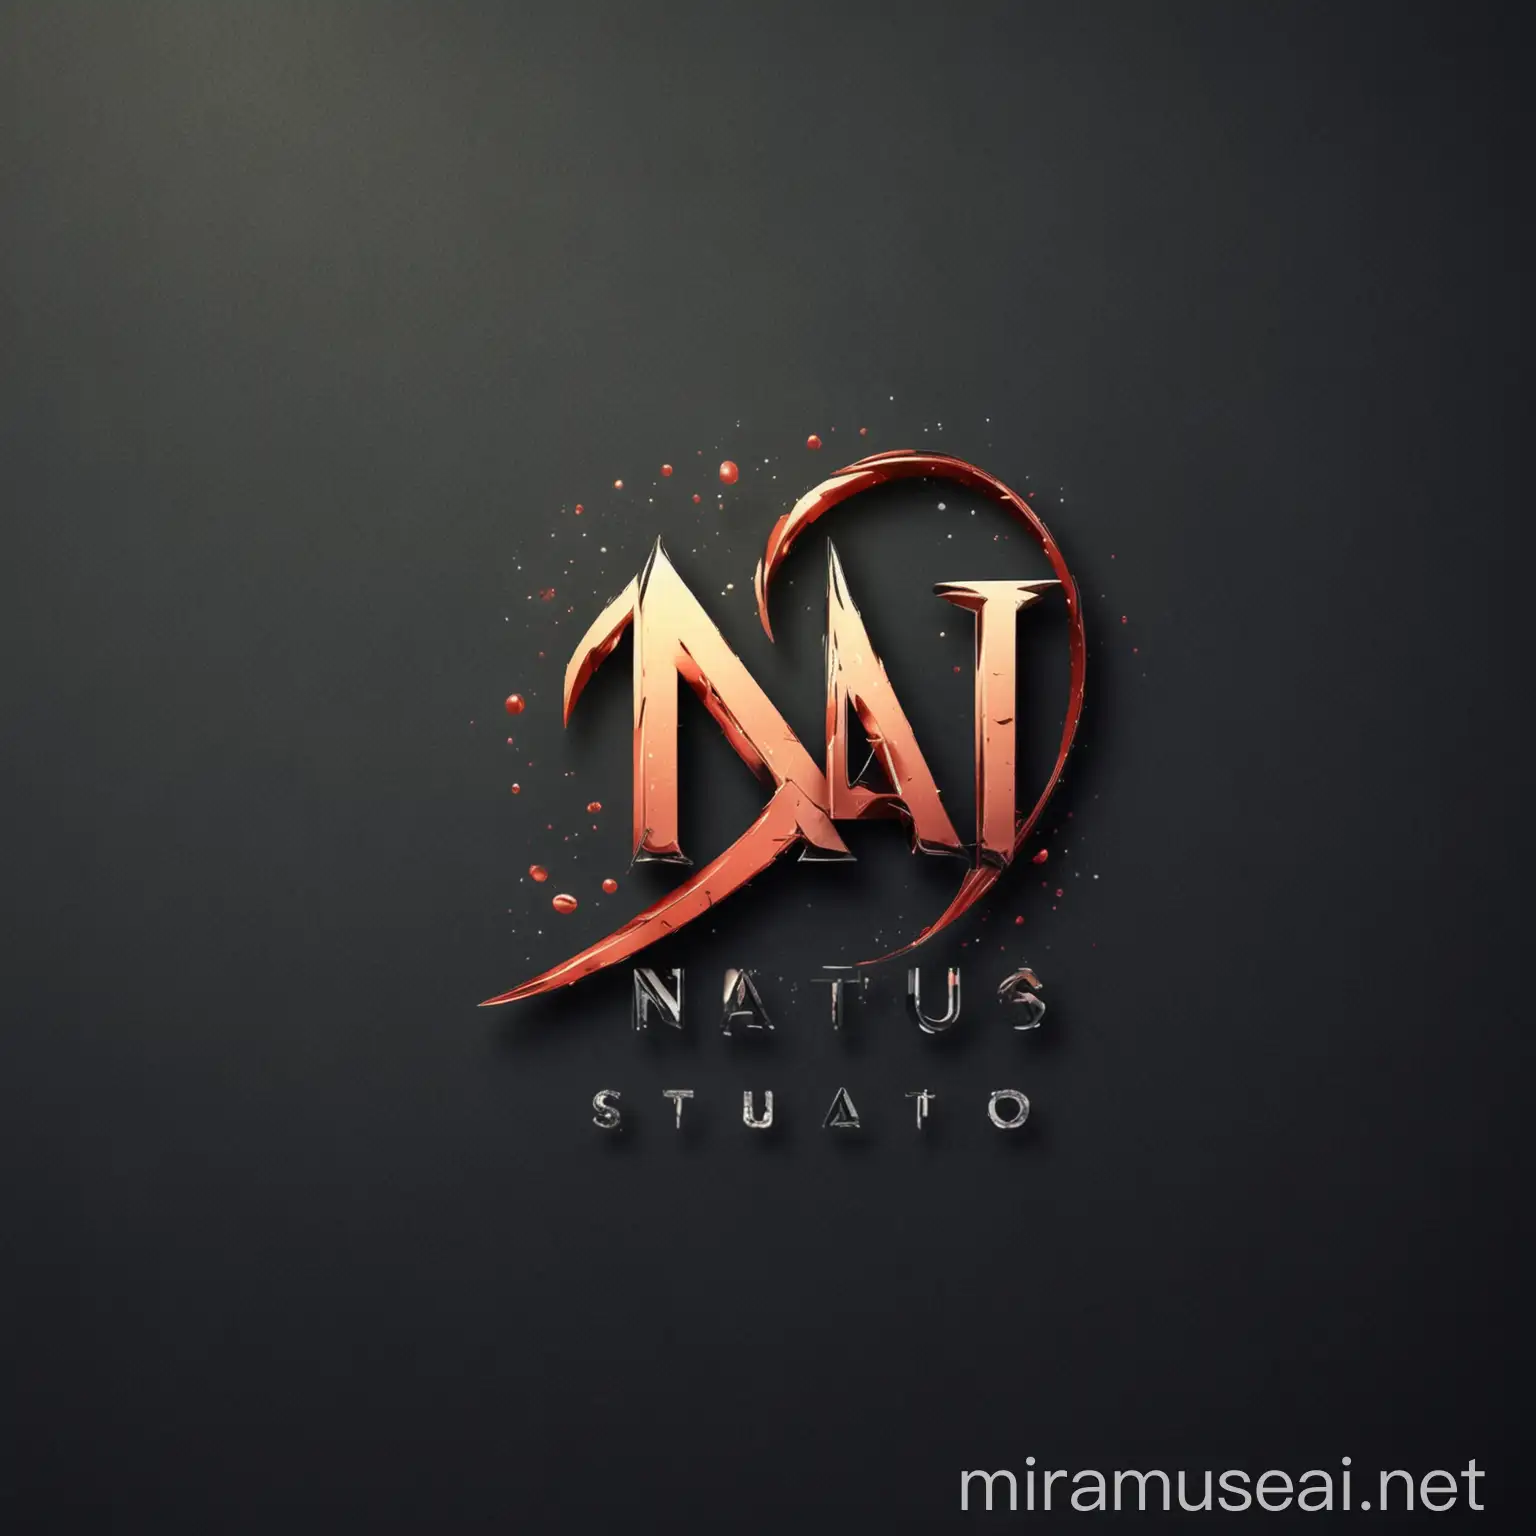 Nati Studio Logo Design Modern Graphics for a Creative Identity